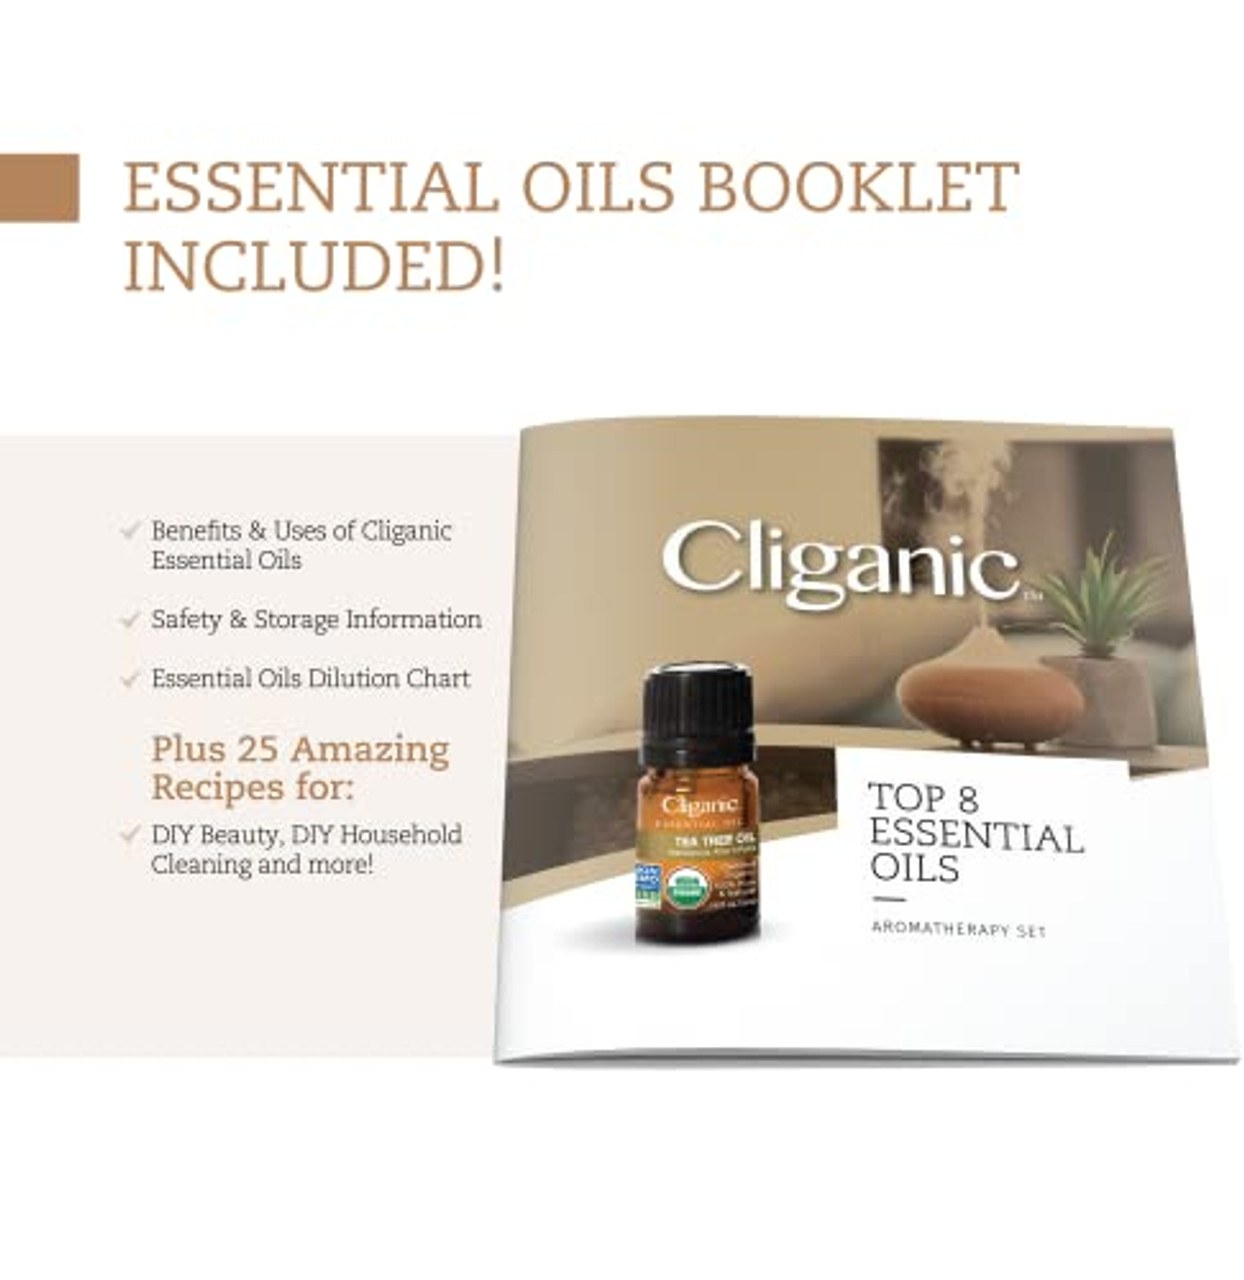 Premium Essential Oils Gift Set